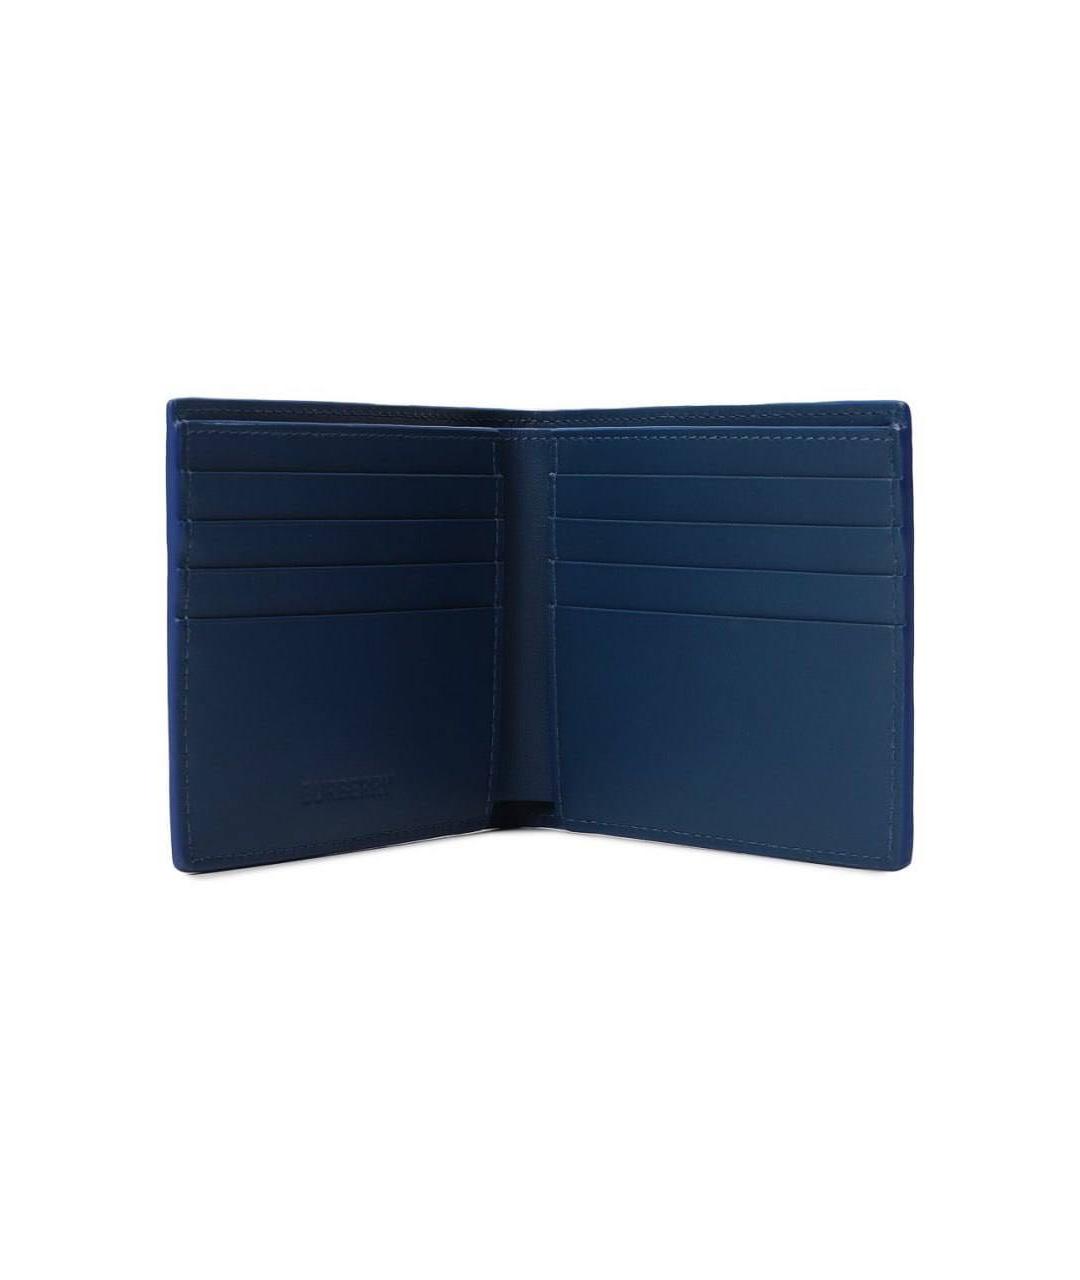 BURBERRY Темно-синий кожаный кошелек, фото 2